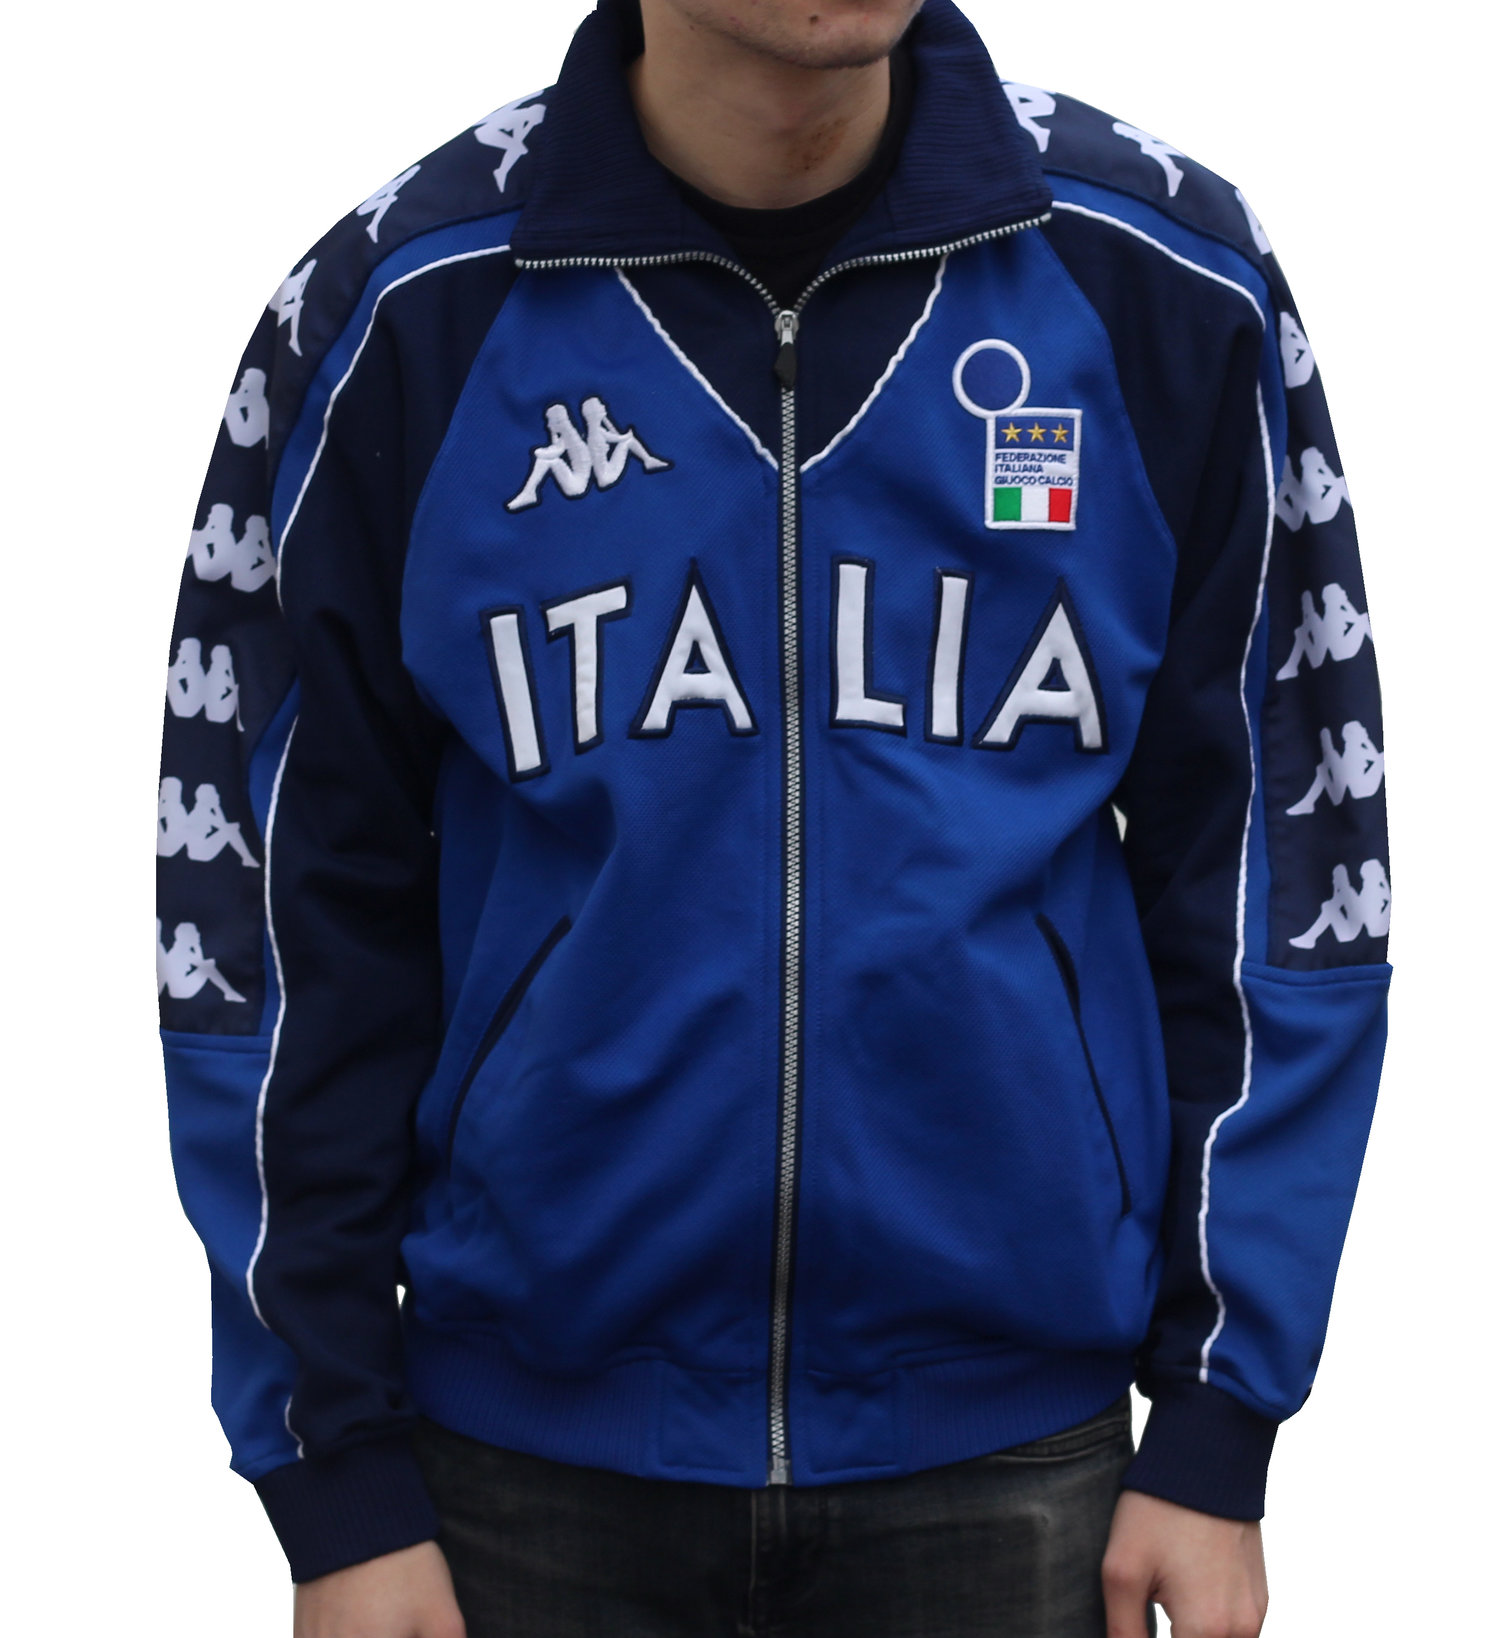 Kappa Italia Full Zip Jacket (Size L) — Roots